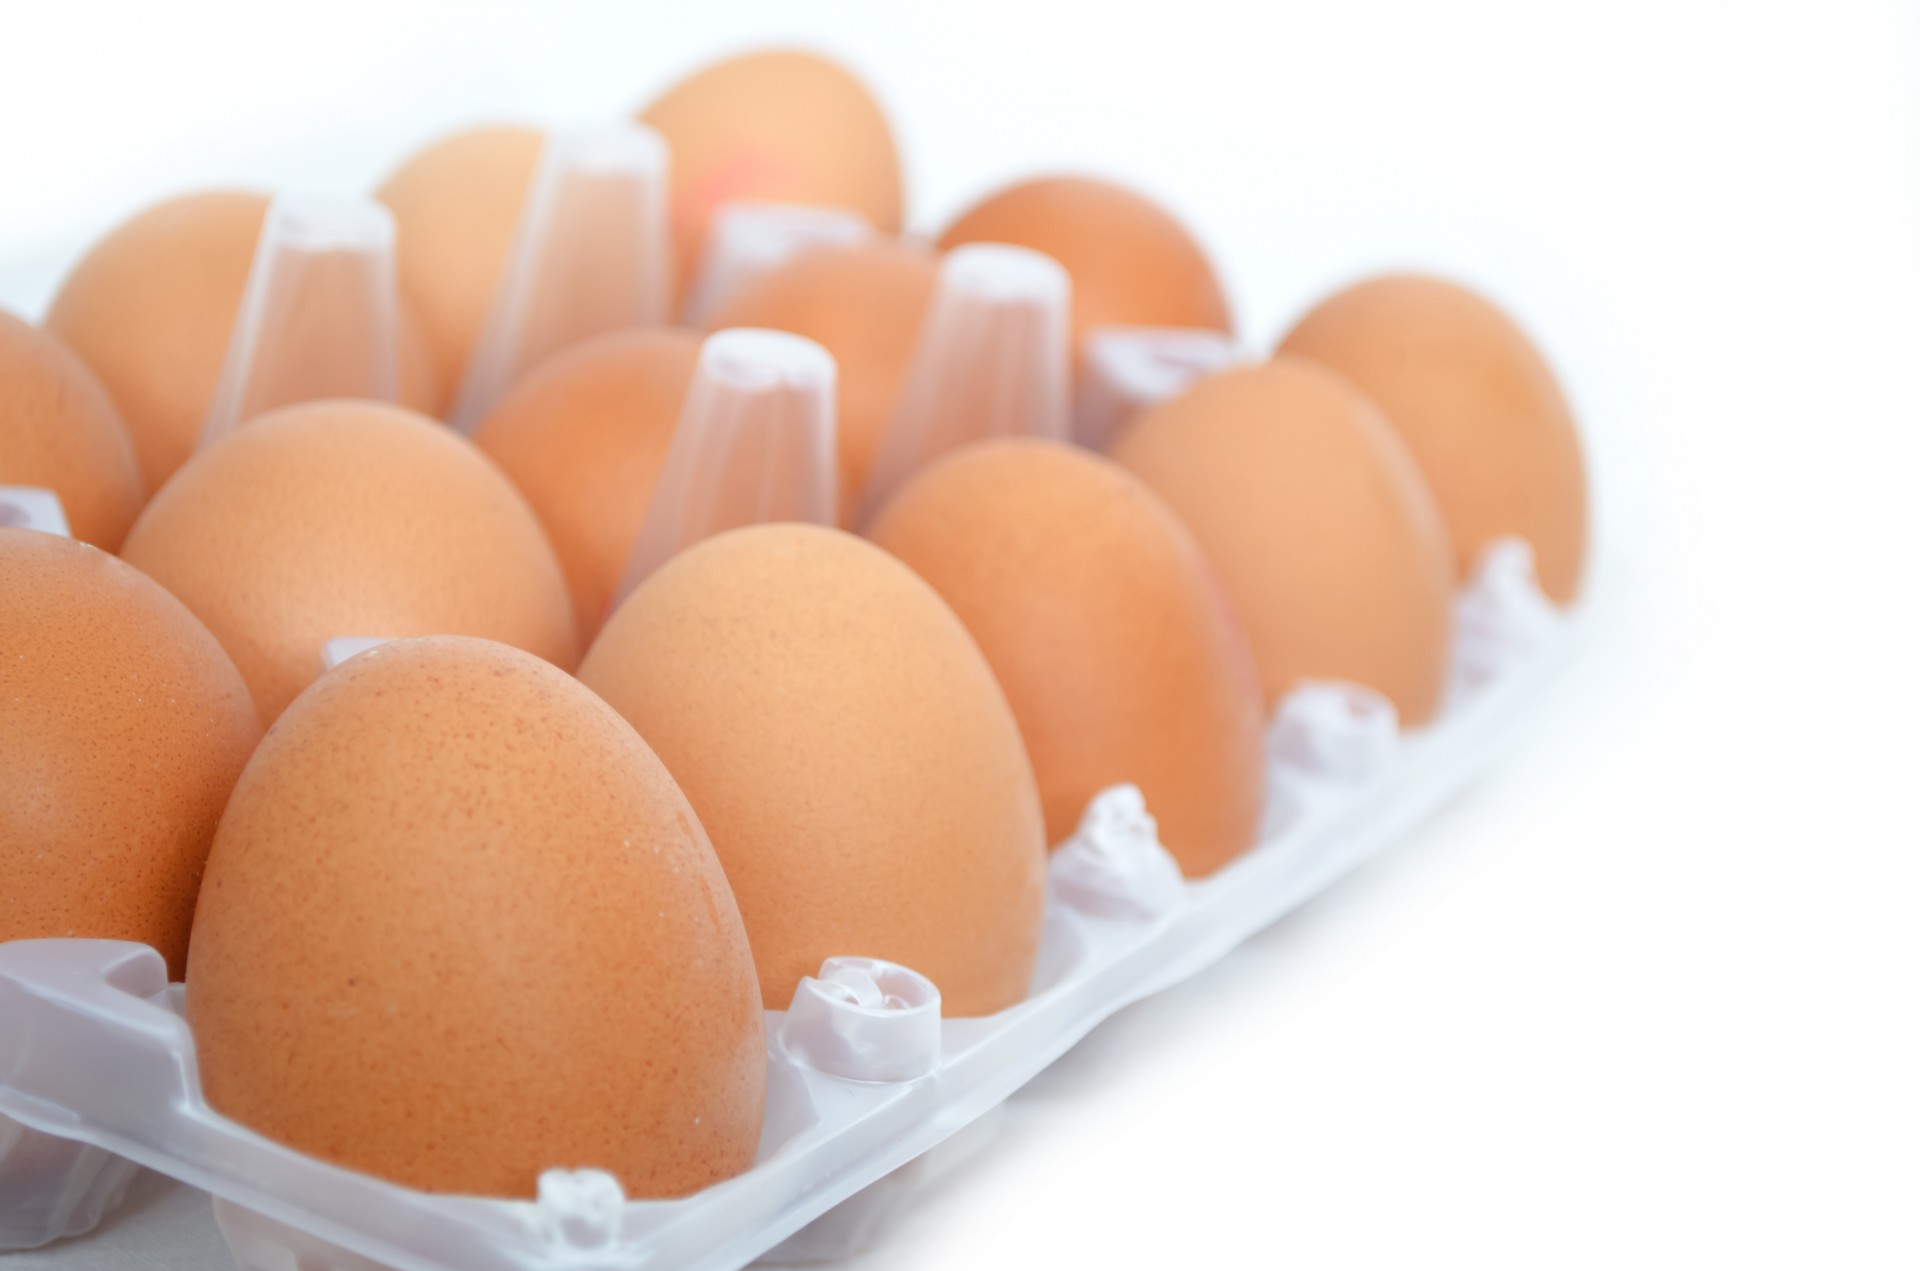 أسعار البيض الأحمر أسعار البيض البلدي سعر كرتونة البيض اليوم سعر البيض اليوم